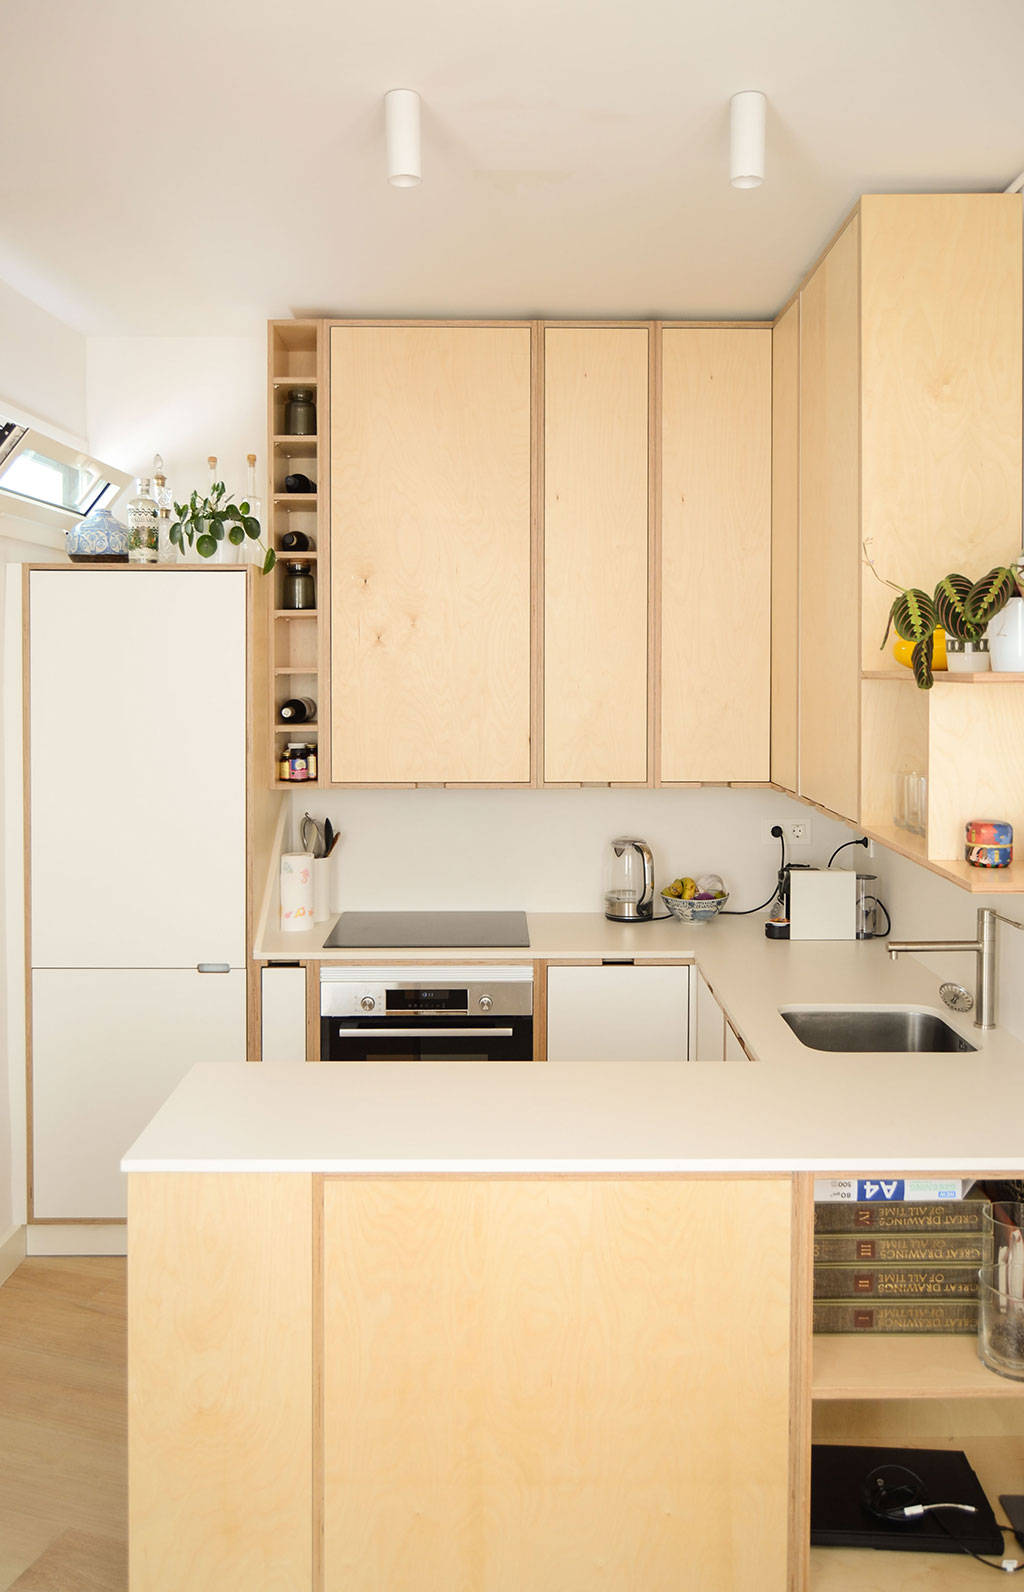 La cocina, aun situándose en el mismo emplazamiento original, se diseña bajo un planteamiento opuesto al original, convirtiéndose en el elemento principal de este espacio híbrido